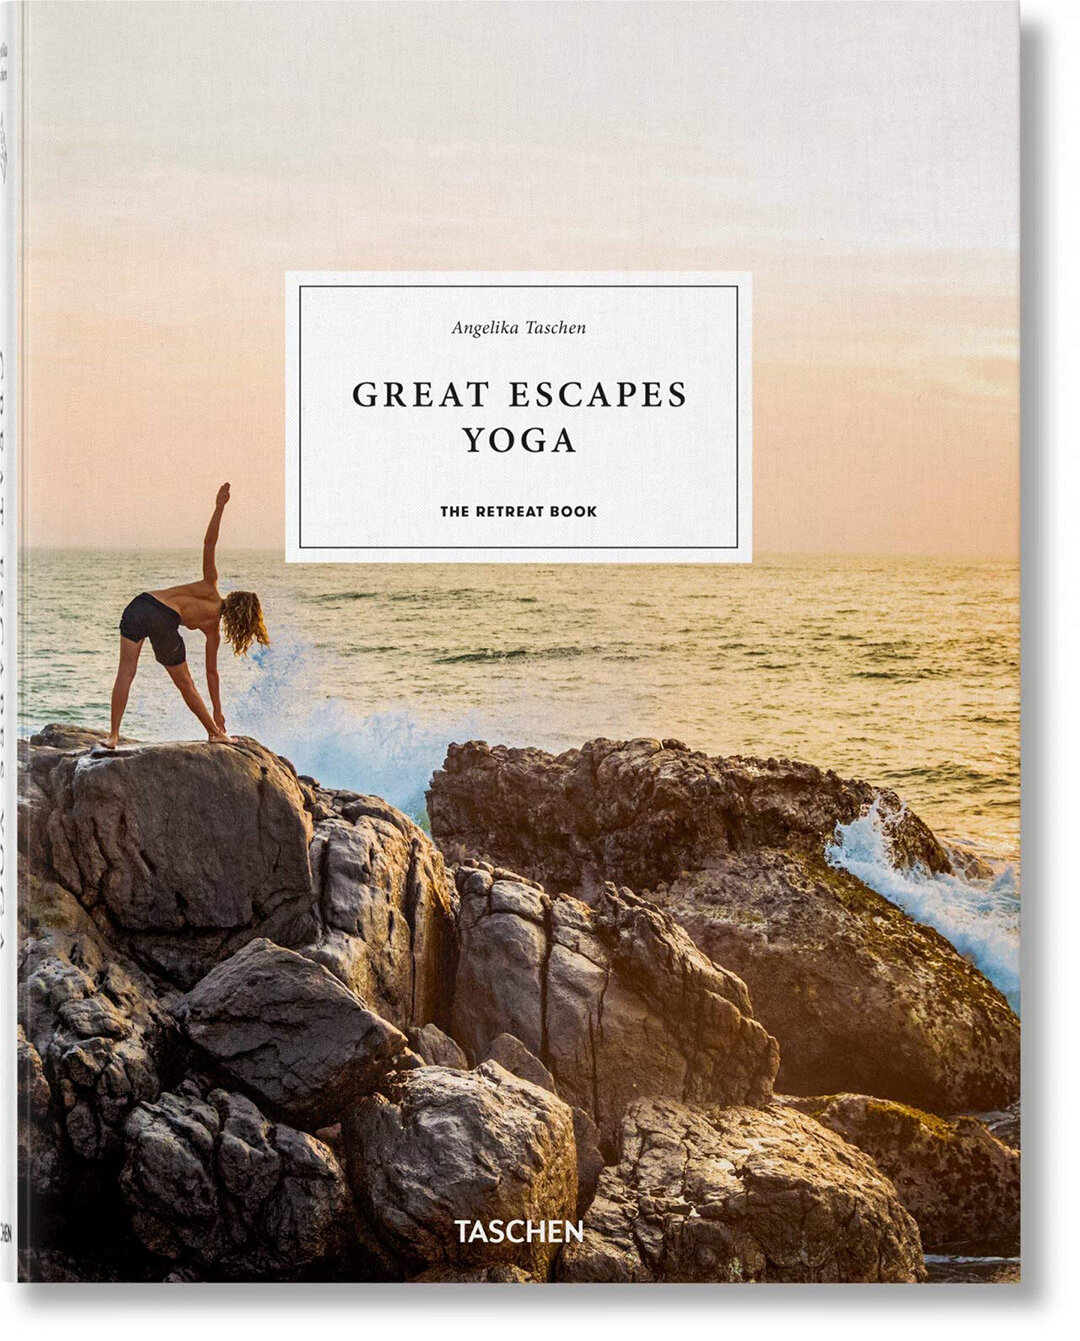 Great Escapes Taschen Book.jpg